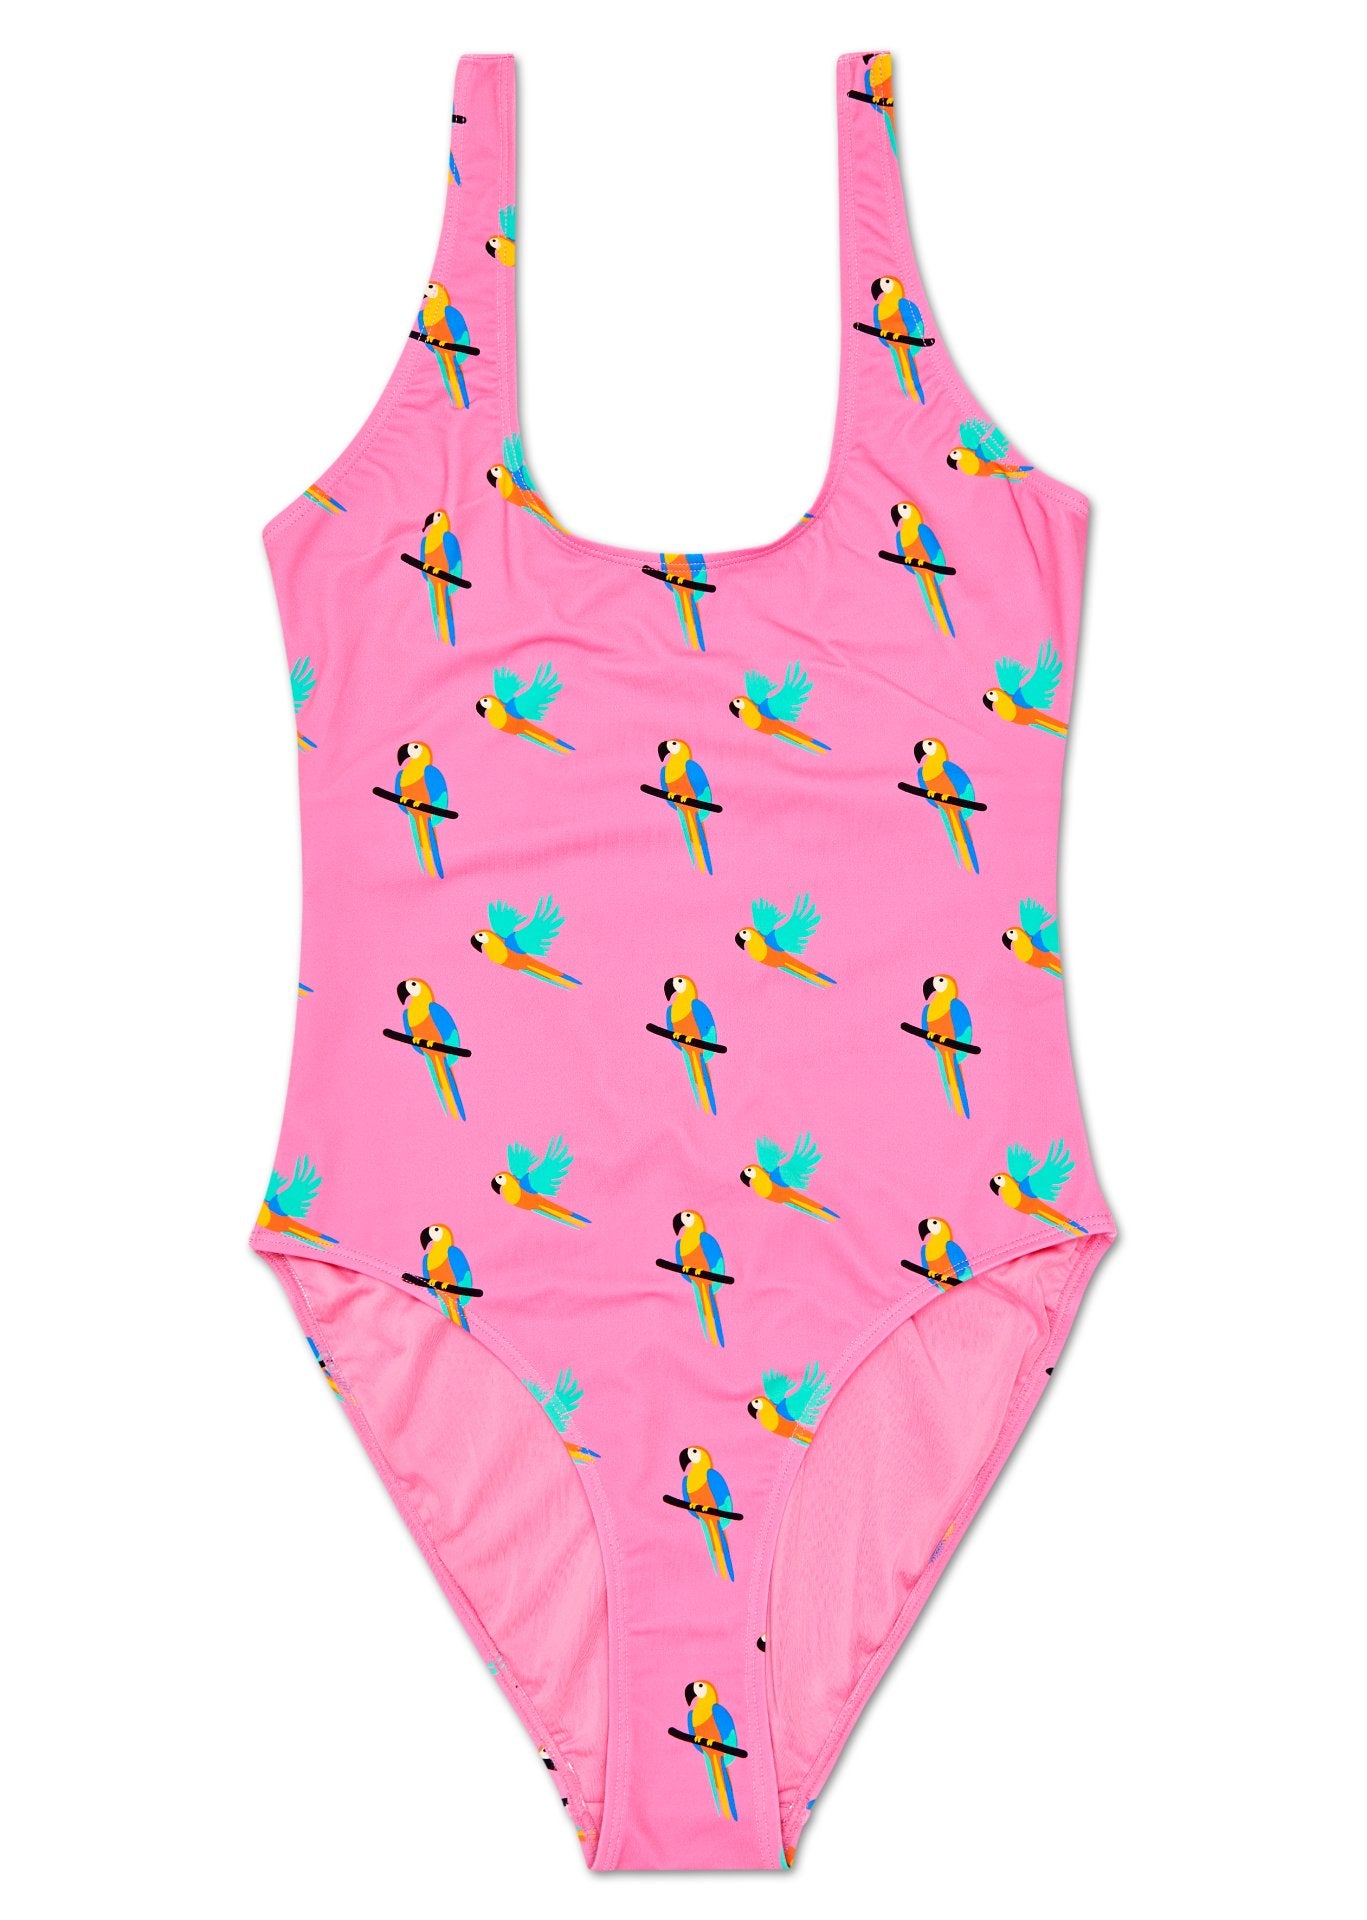 Růžové dámské plavky Happy Socks s papoušky, vzor Parrot